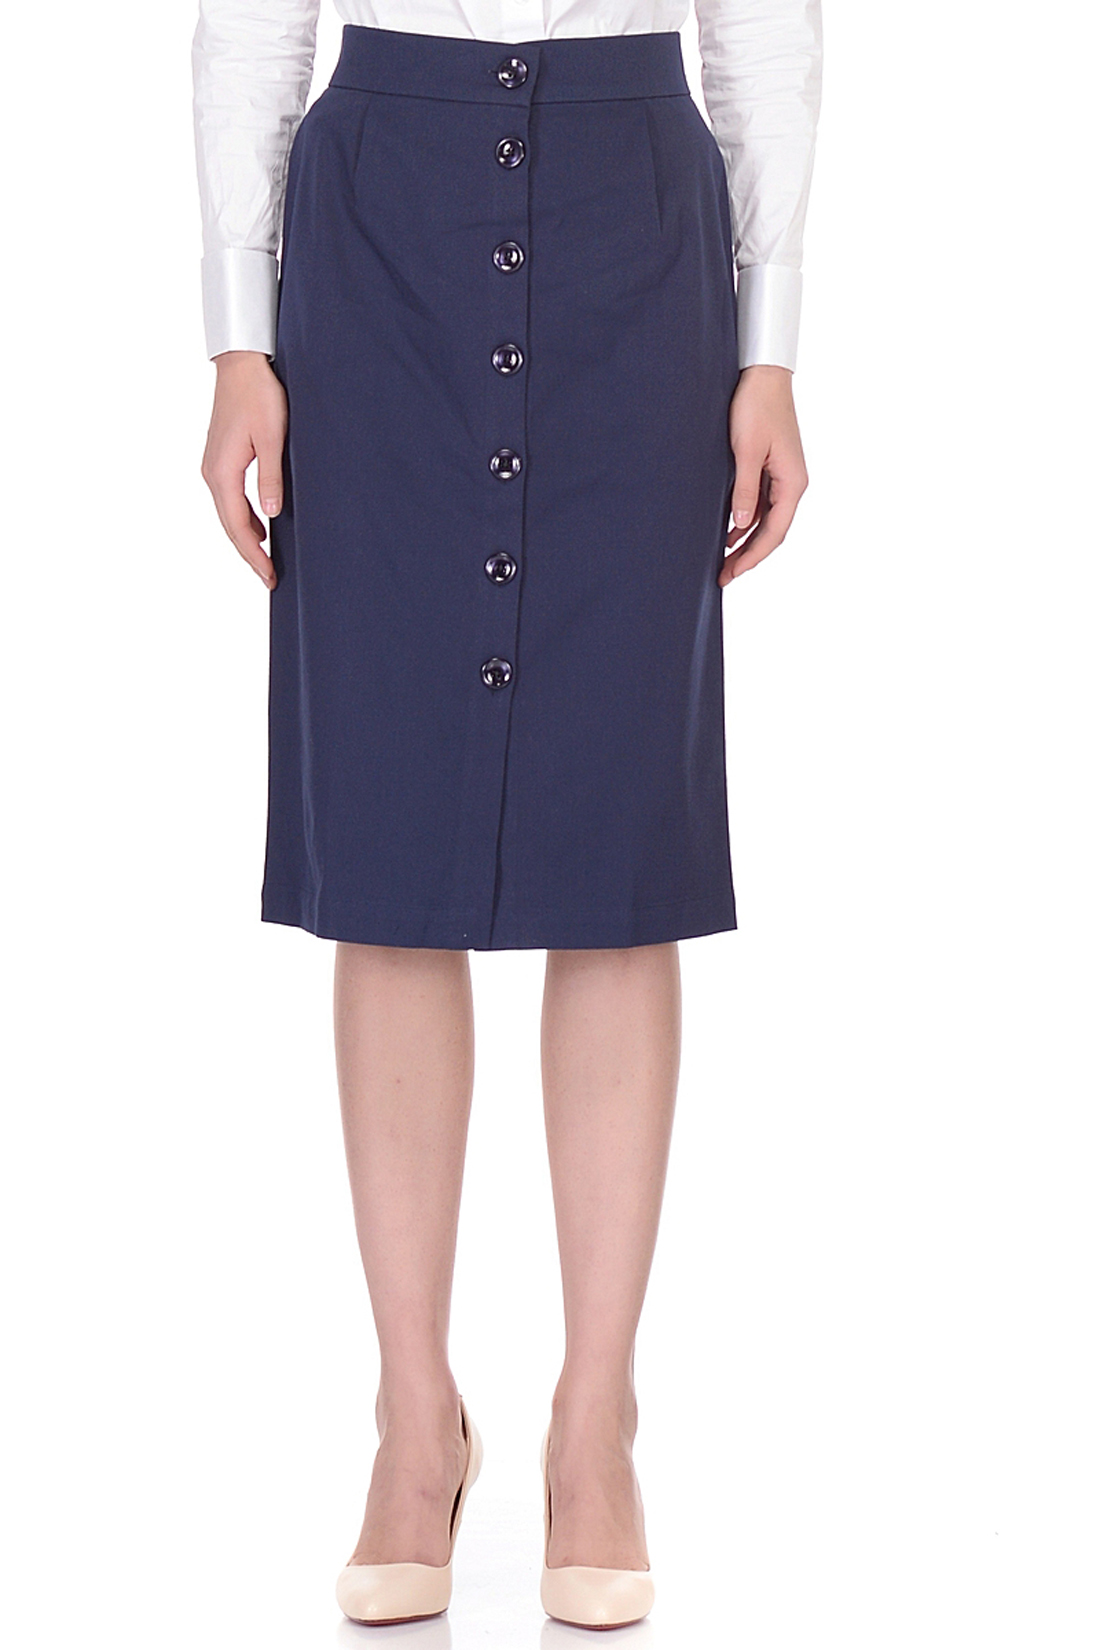 Классическая юбка с пуговицами (арт. baon B478007), размер XXL, цвет синий Классическая юбка с пуговицами (арт. baon B478007) - фото 3